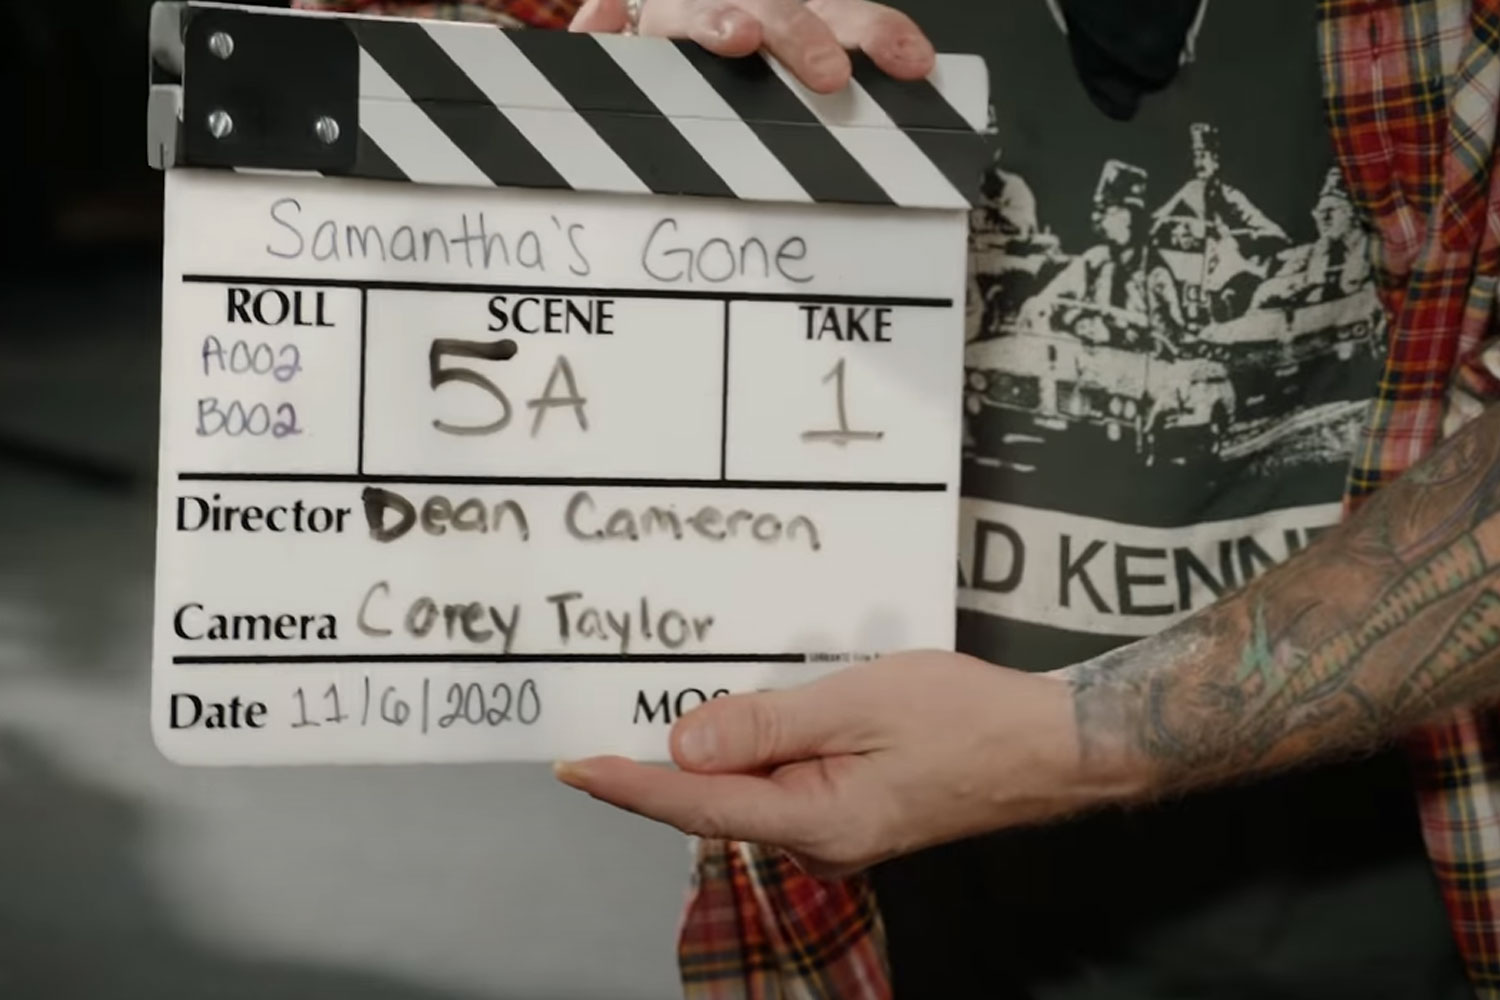 Corey Taylor no clipe de "Samantha's Gone"